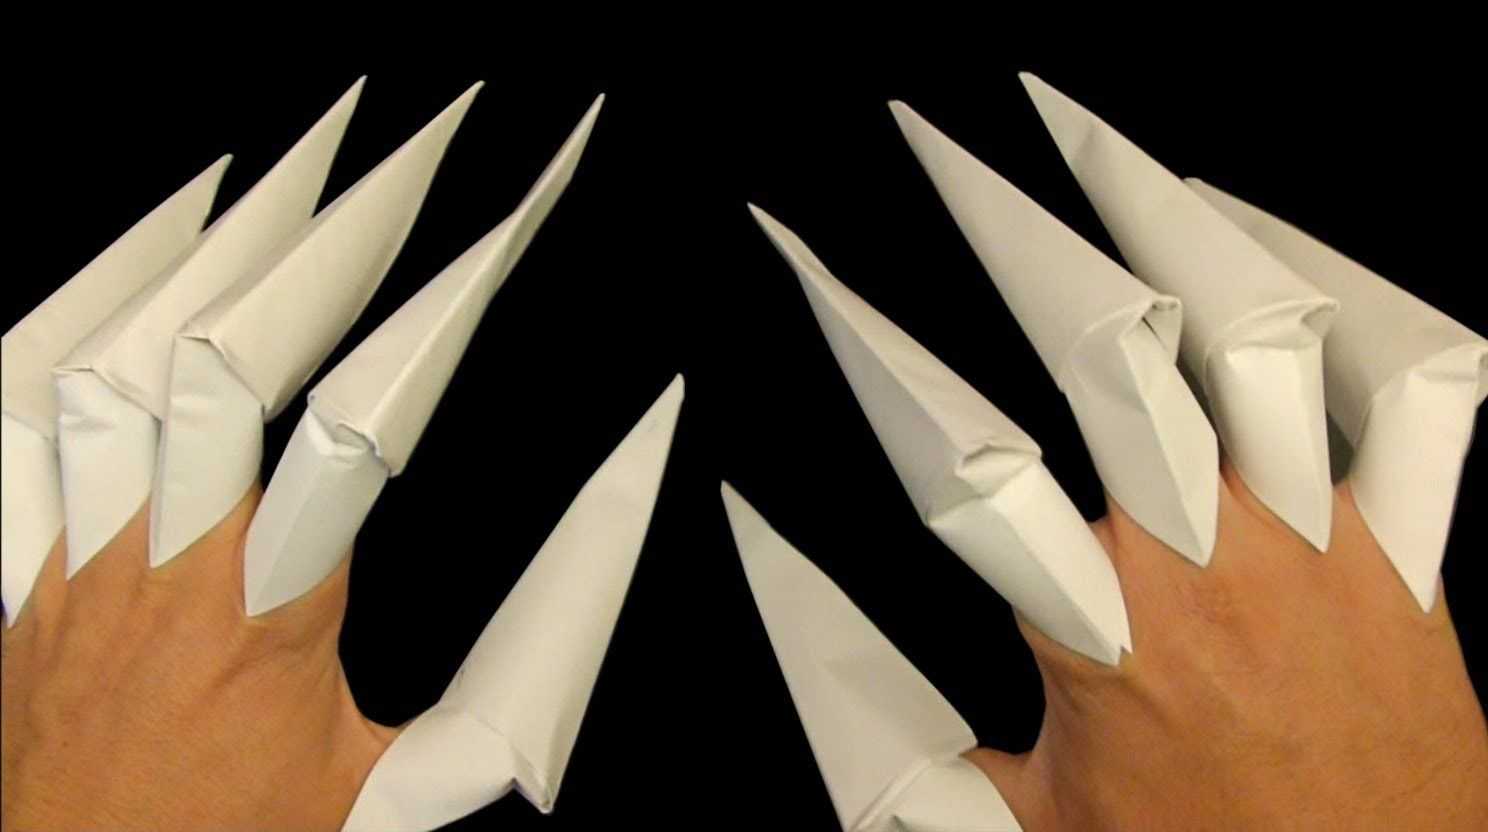 Как сделать когти из бумаги: оригами, на пальцы, росомаха, дракон, своими руками, схема, хищник, из железа, дерева, картона, перчатка, пластилин